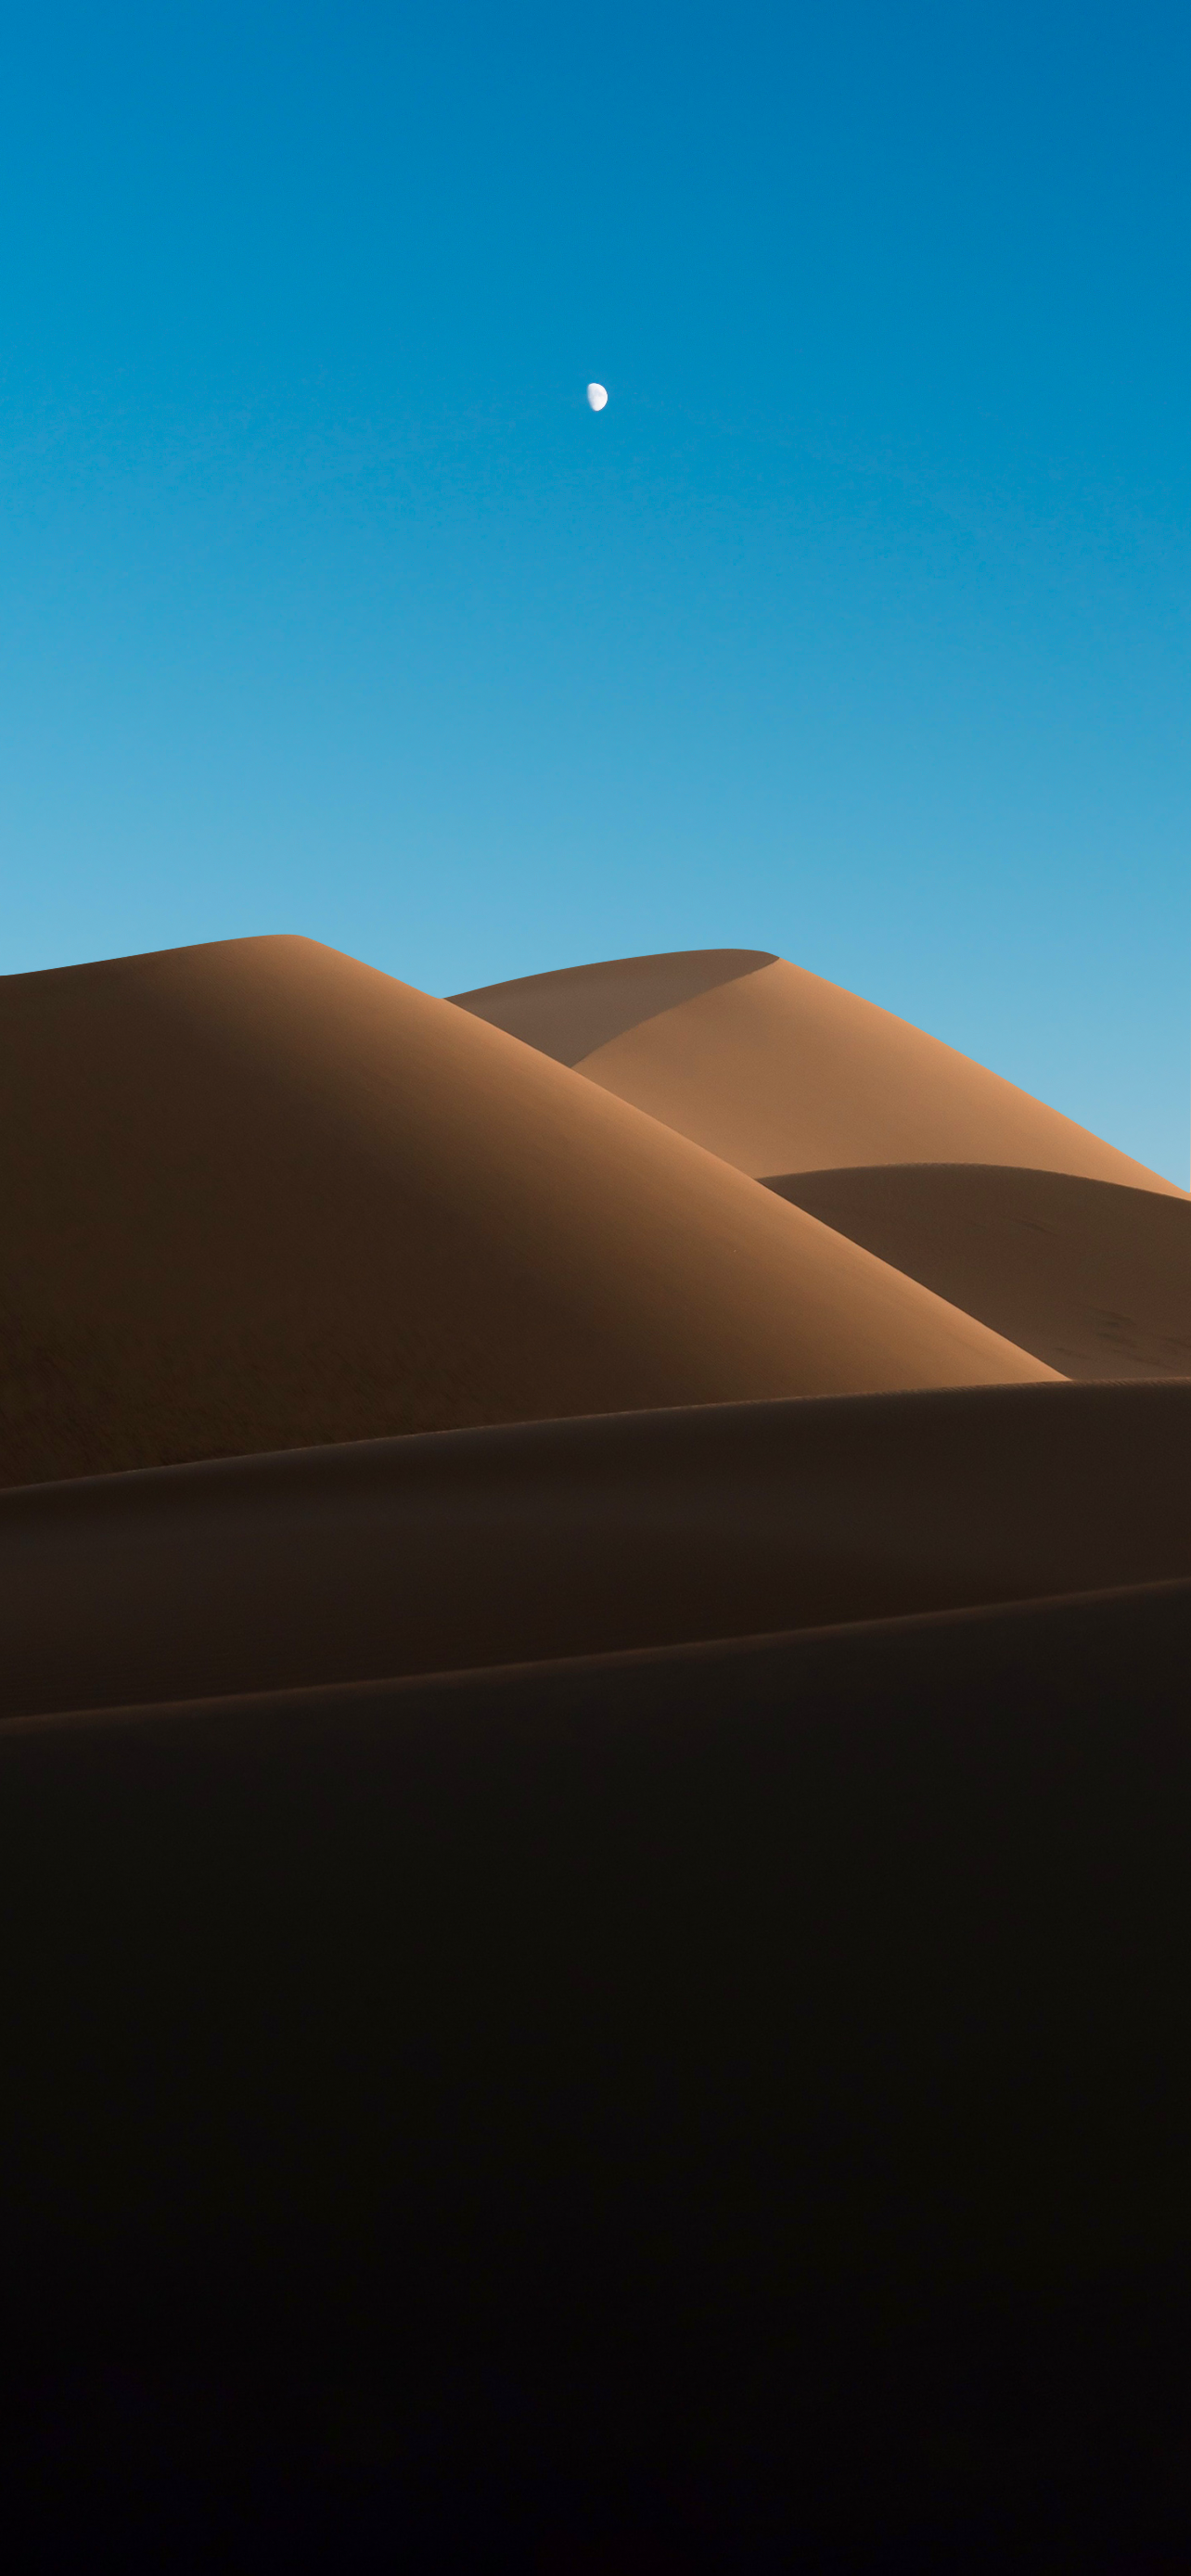 100+] Dune Wallpapers | Wallpapers.com